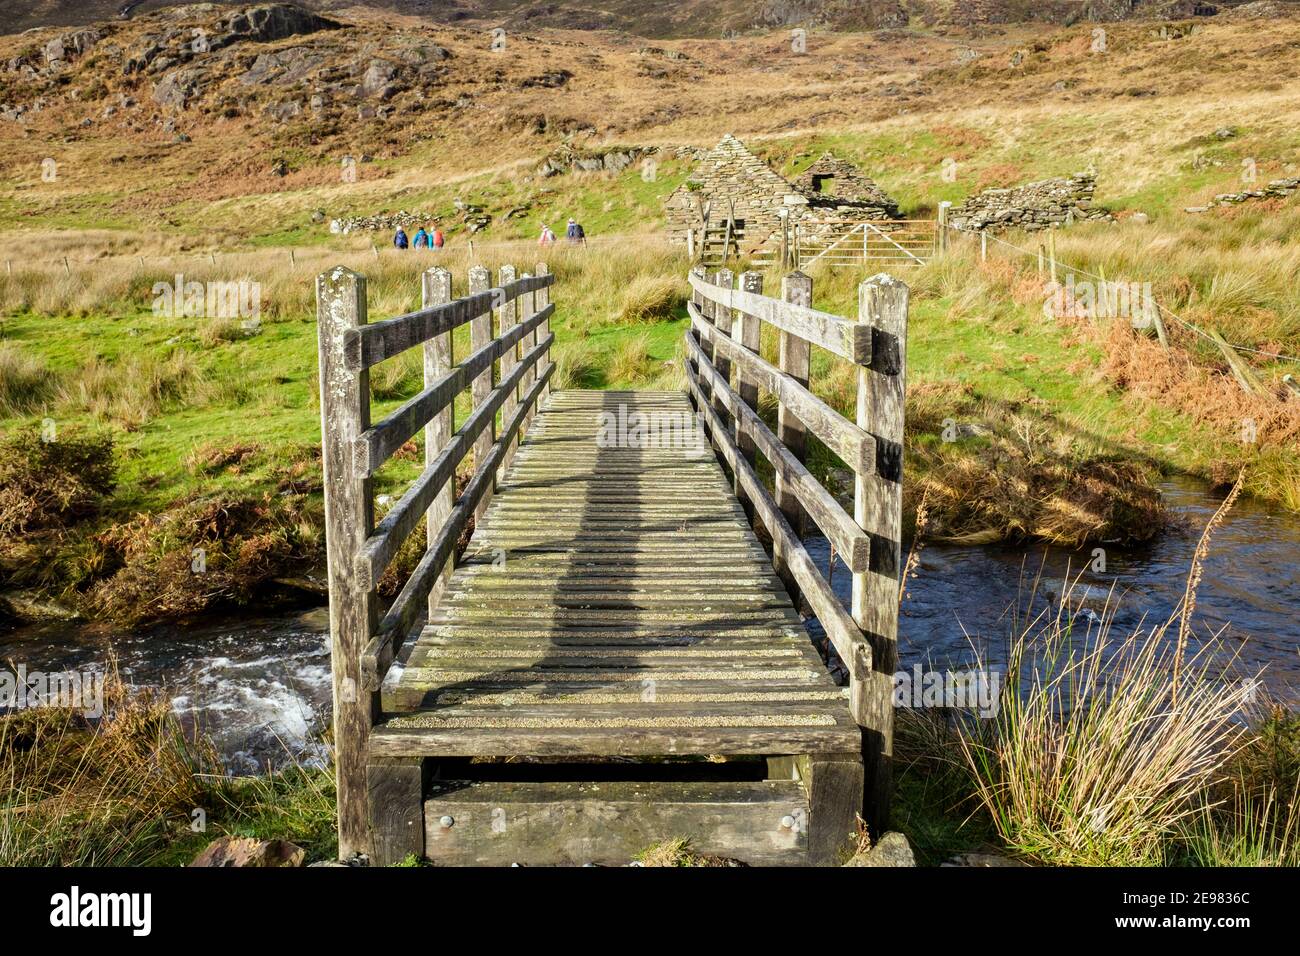 Hölzerne Fußgängerbrücke über einen Bach mit weit entfernten Spaziergängern auf Fußweg im Snowdonia Nationalpark. Bethania, Beddgelert, Gwynedd, Wales, Großbritannien Stockfoto